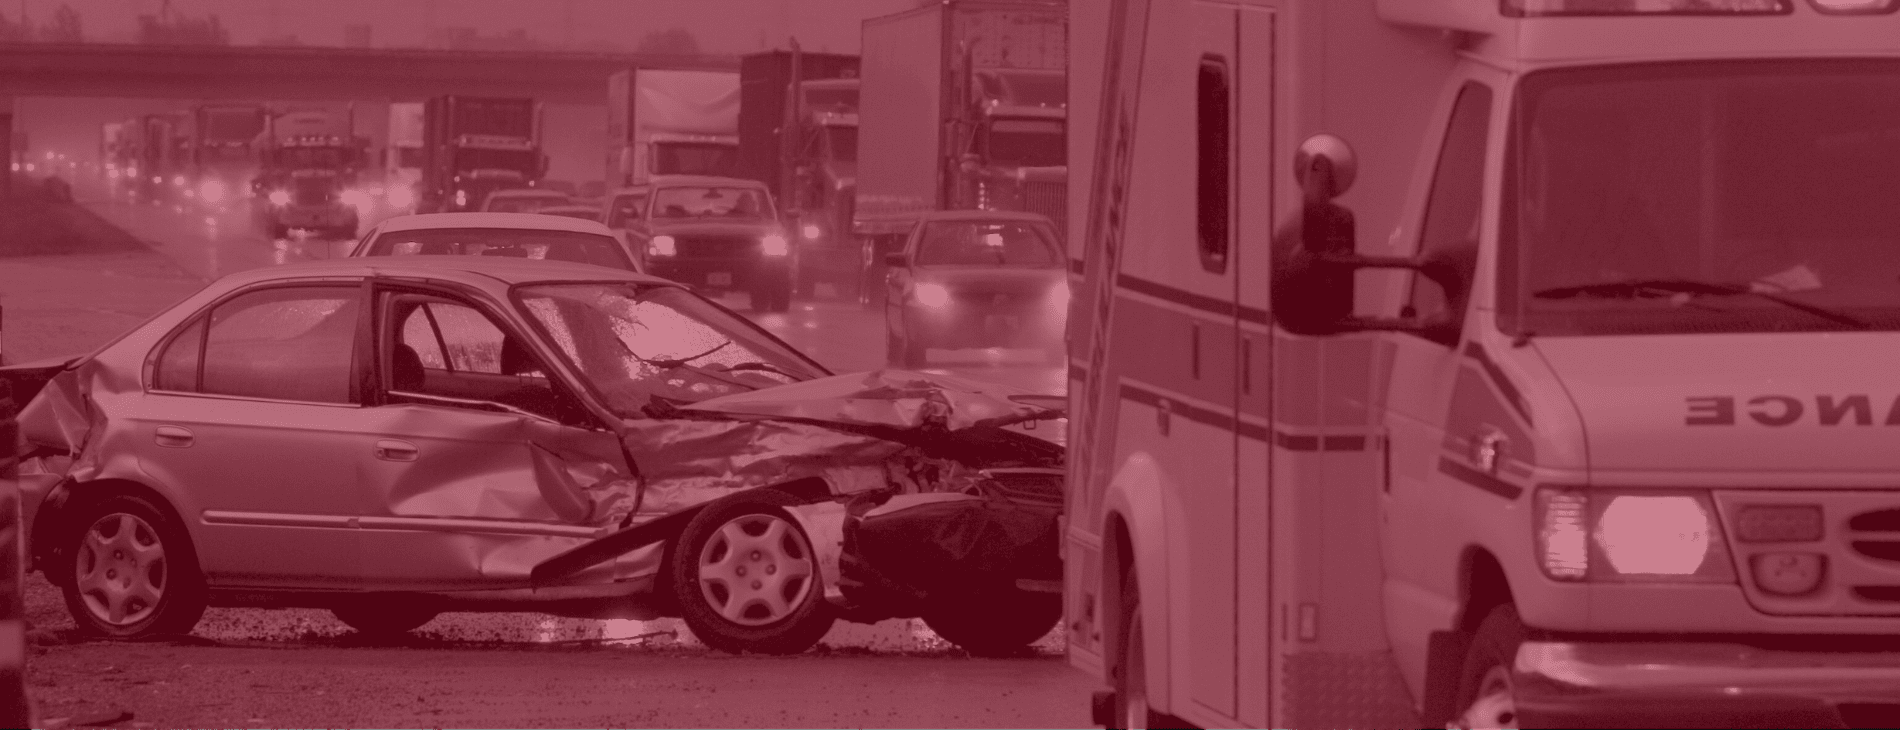 Lakeland Village car crash